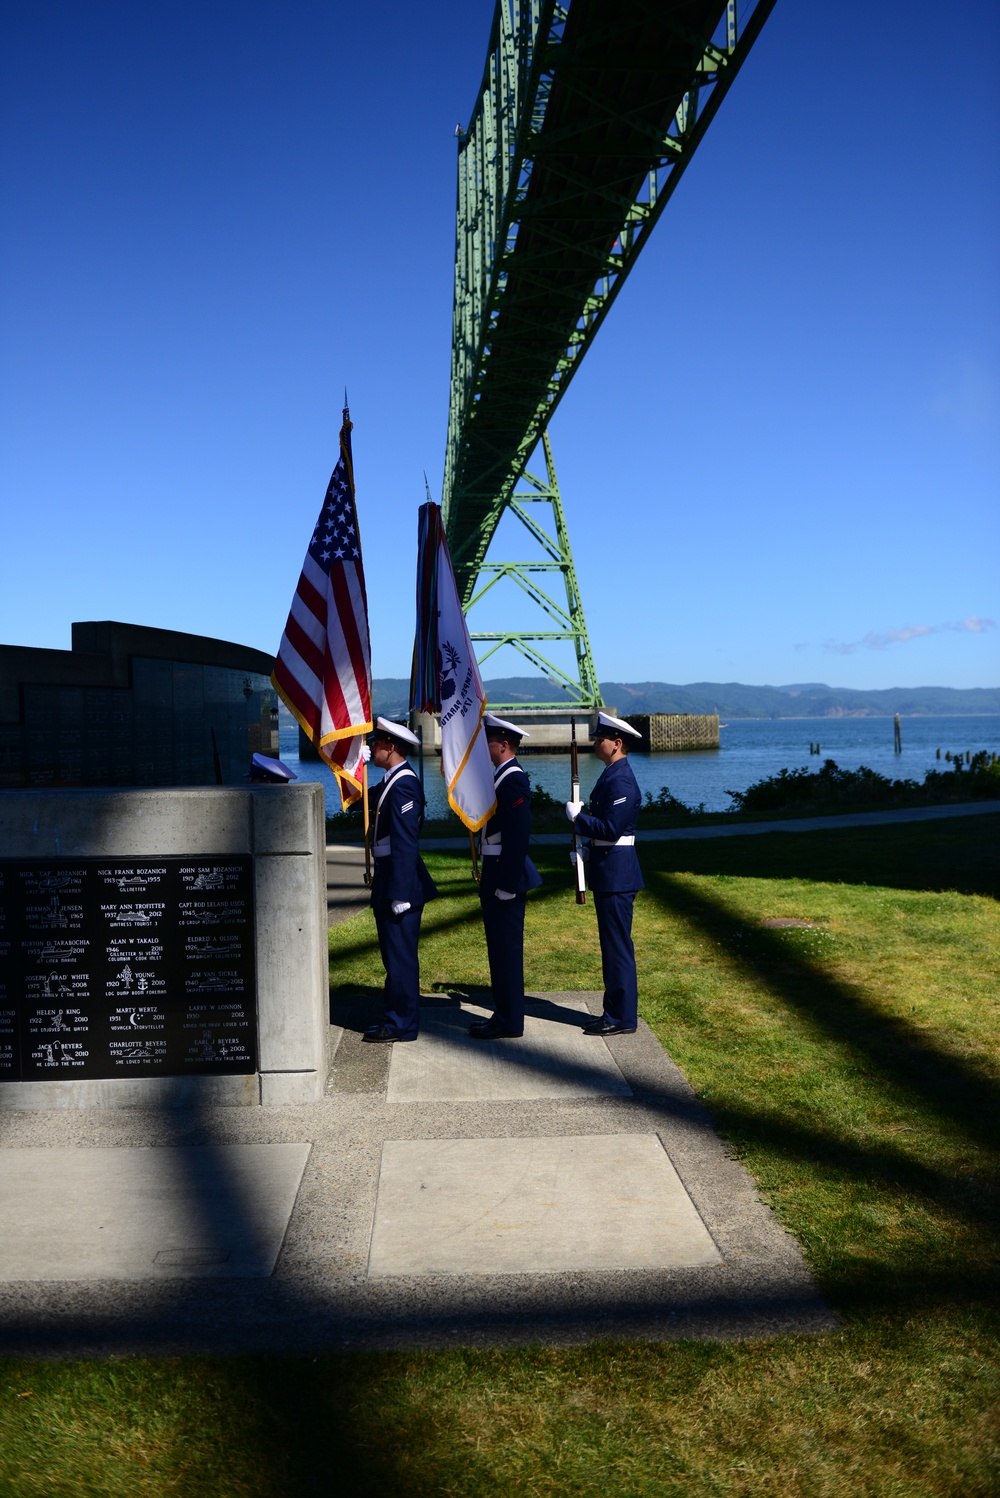 Coast Guard color guard presents at Seaman's Memorial